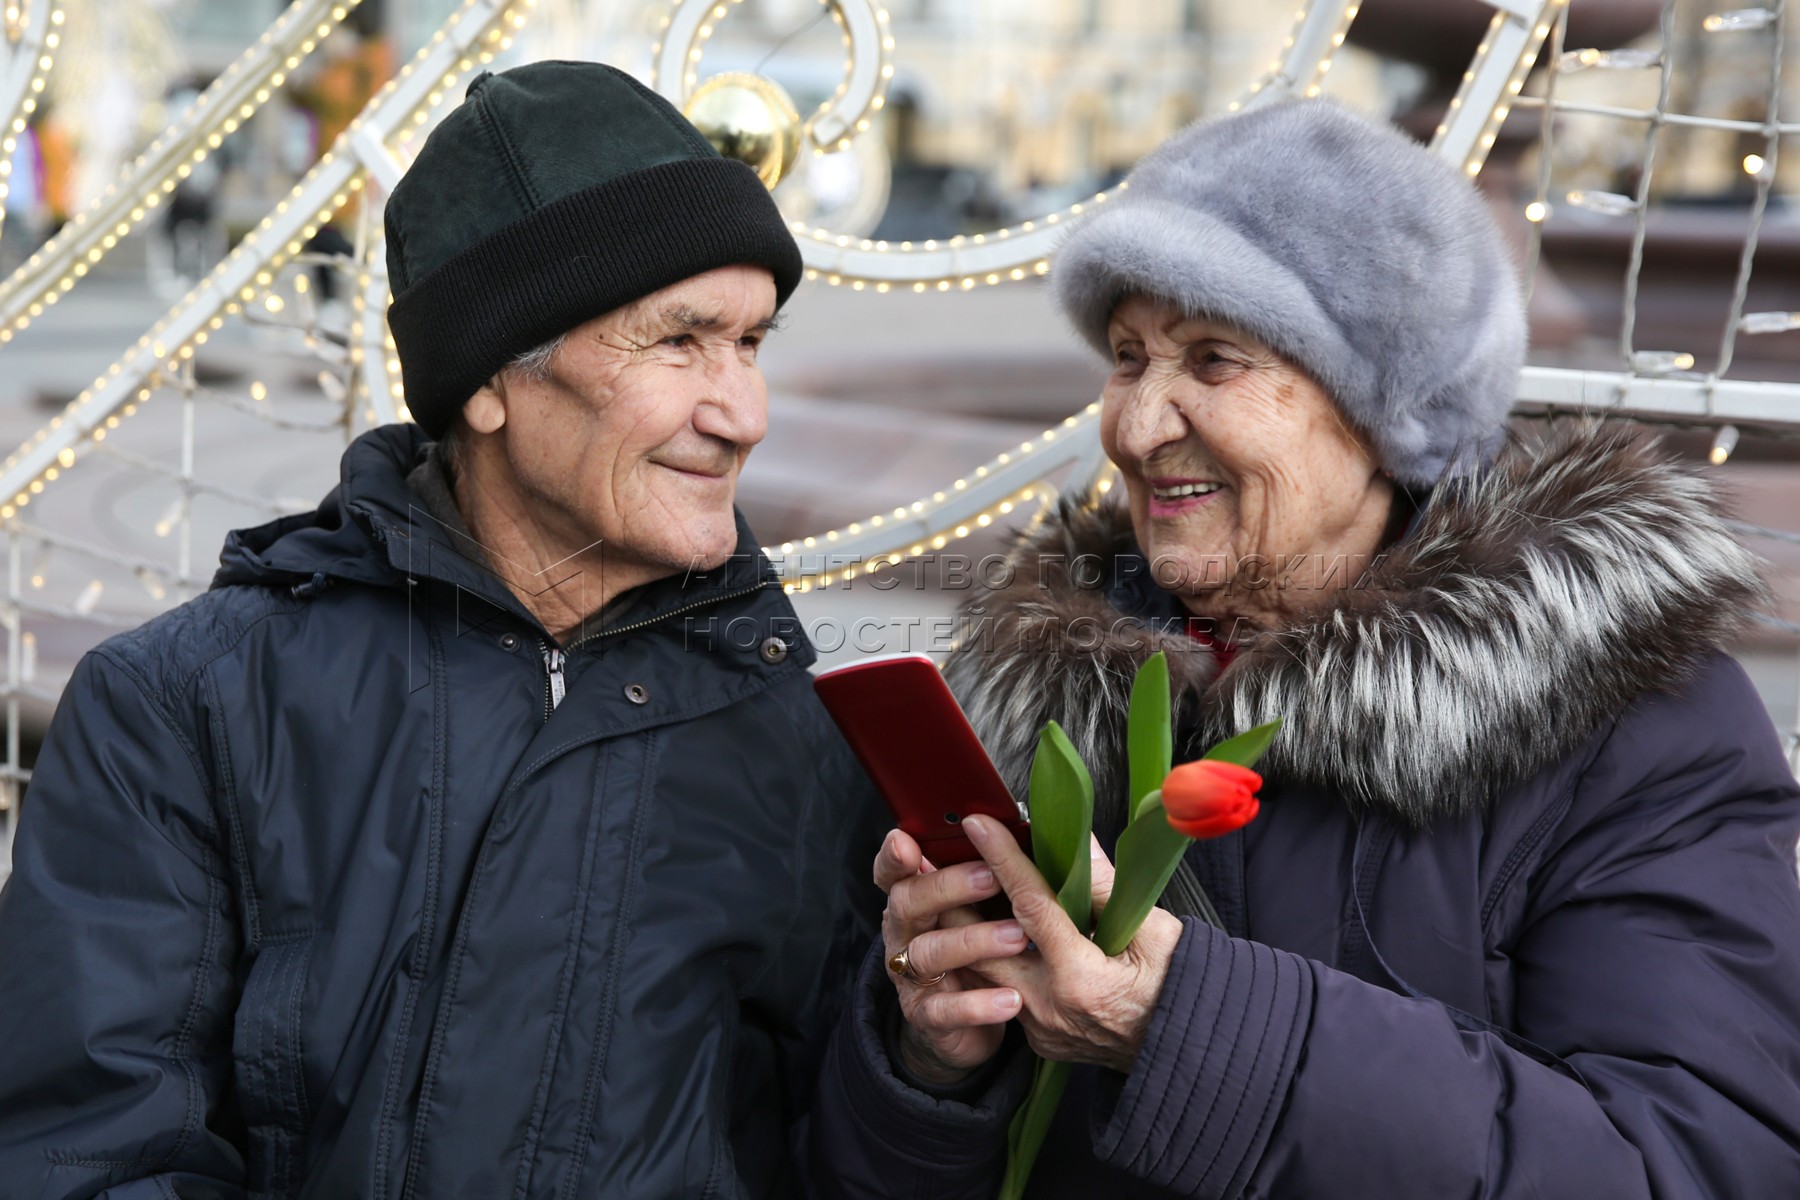 Новости для неработающих пенсионеров на сегодня последние. Пенсионеры в России. Пенсионеры РФ. Русские пенсионеры. Пенсионеры в 2016 году.